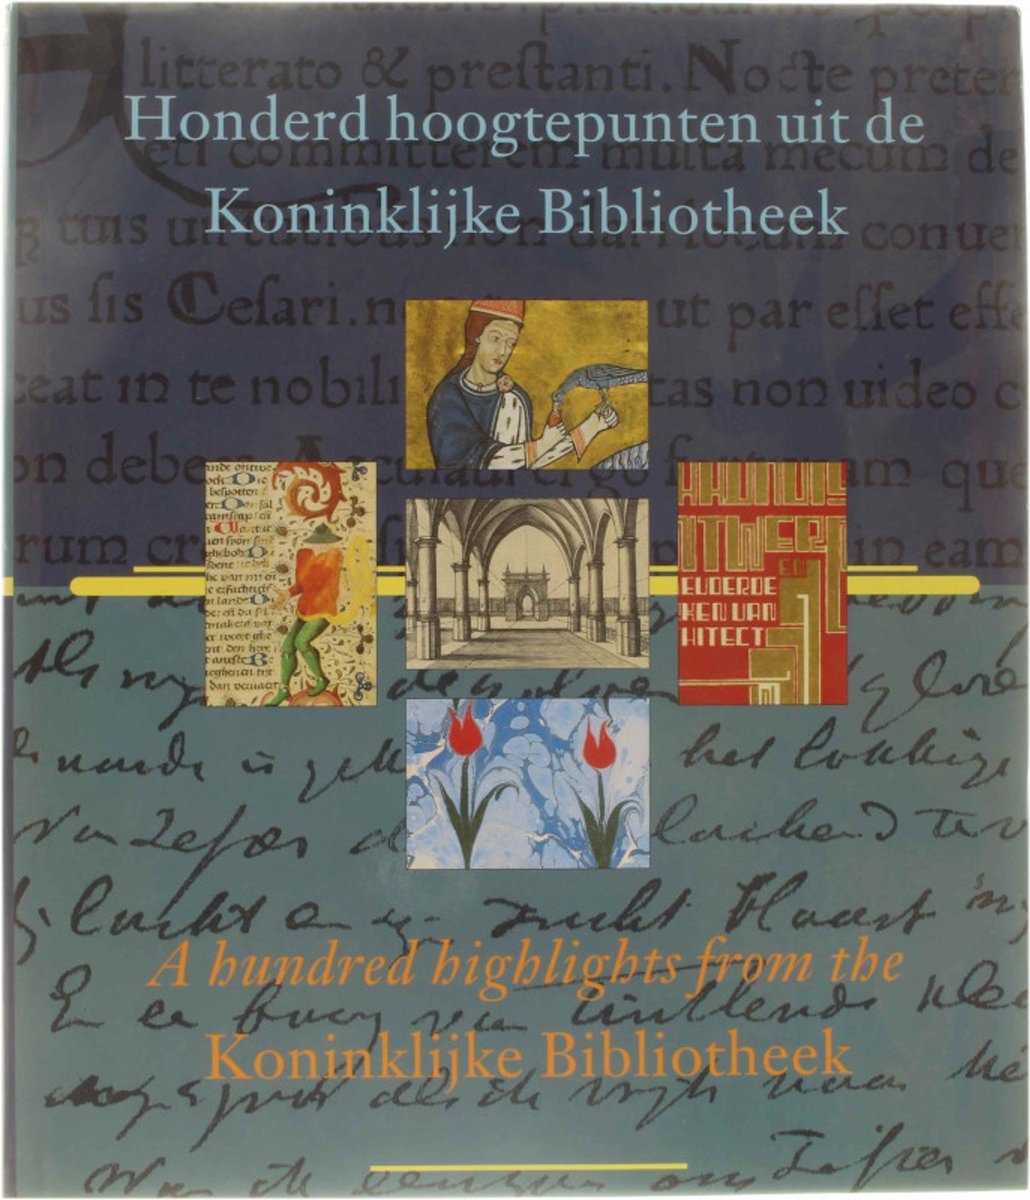 Honderd Hoogtepunten Koninklijke Bibliot - Onbekend